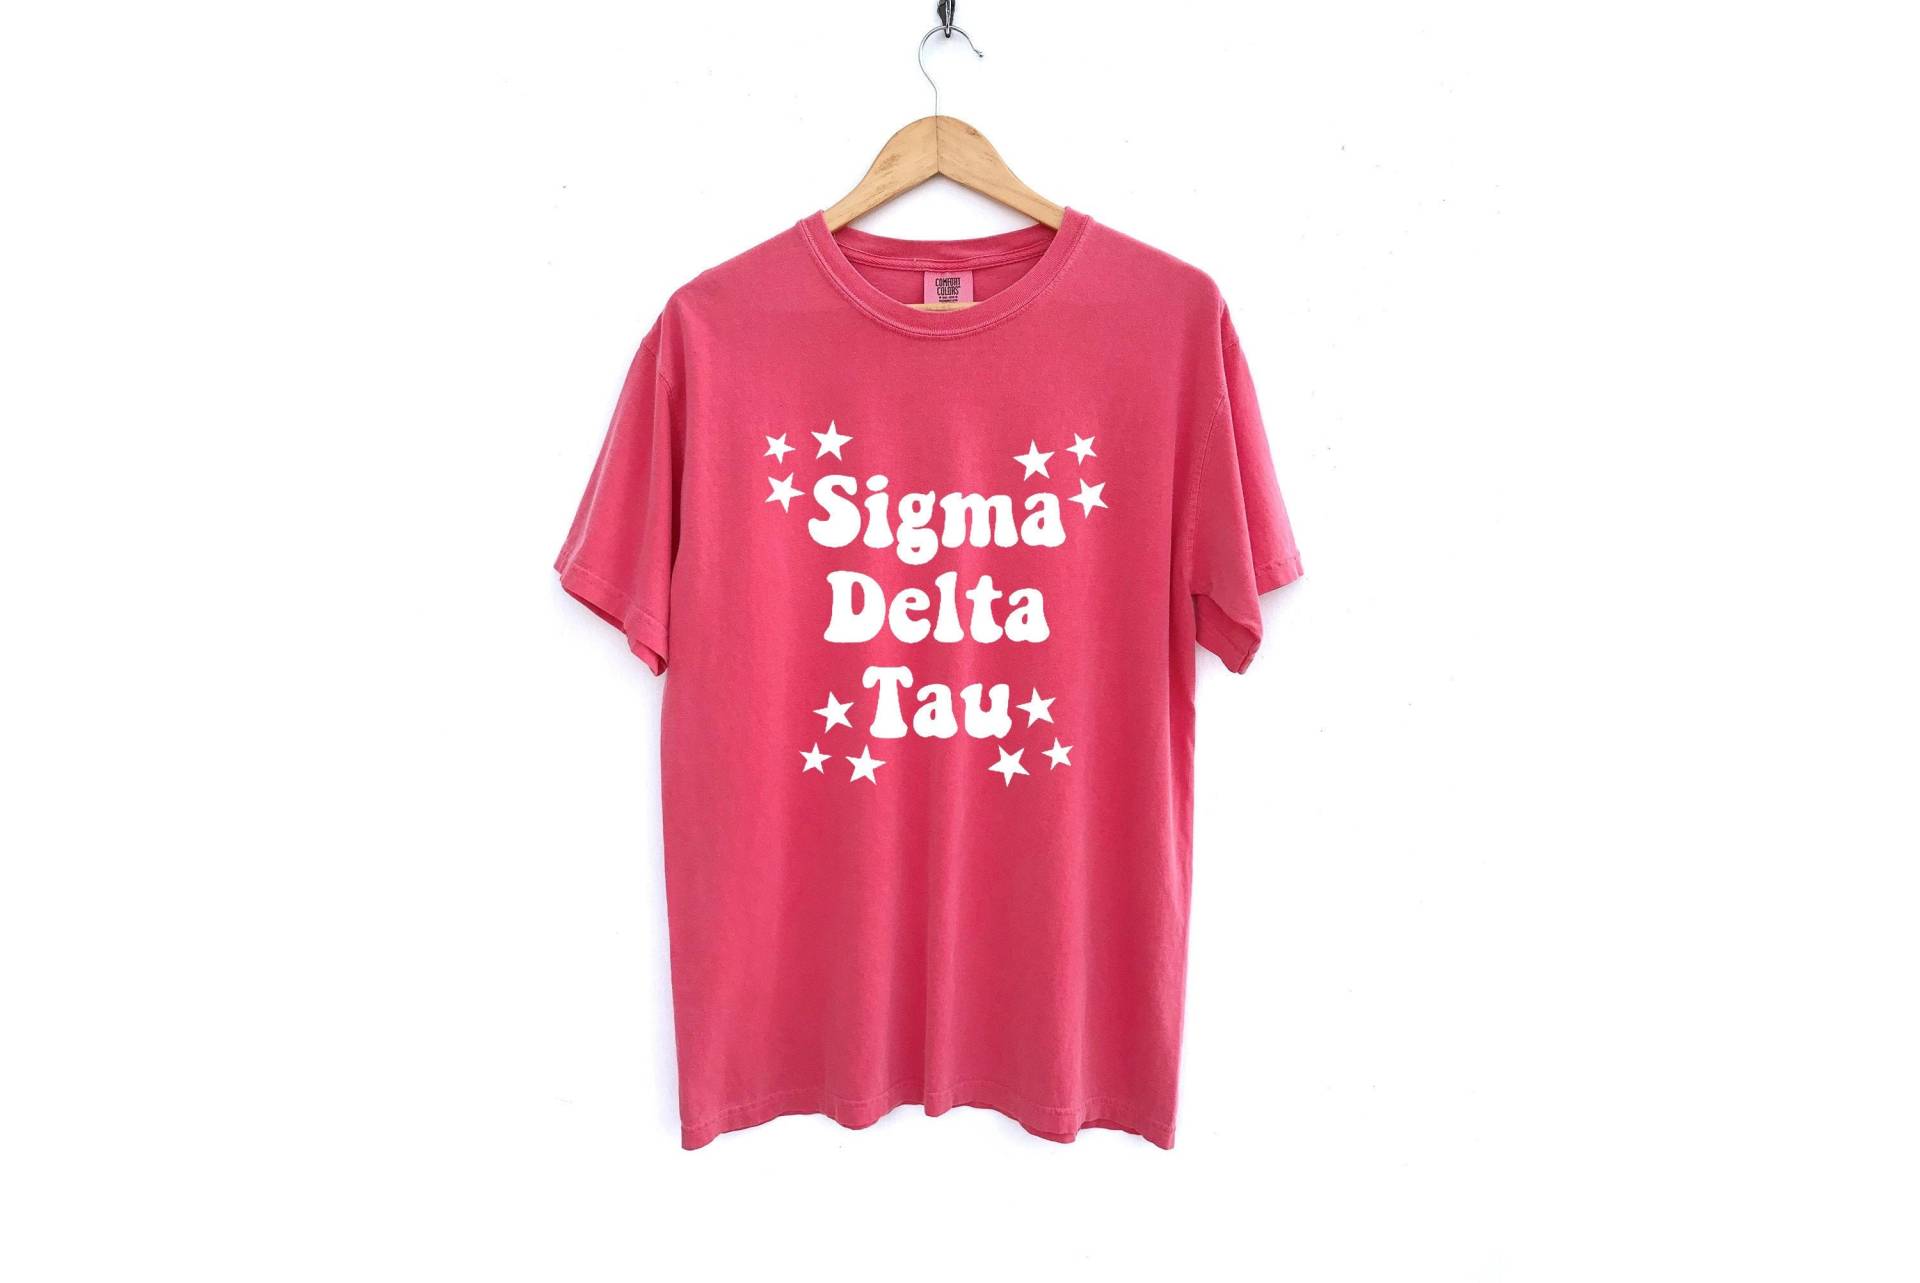 Sigma Delta Tau/Sehende Sterne Sorority Shirt Comfort Colors Weitere Farben Verfügbar von MadebyMollzShop